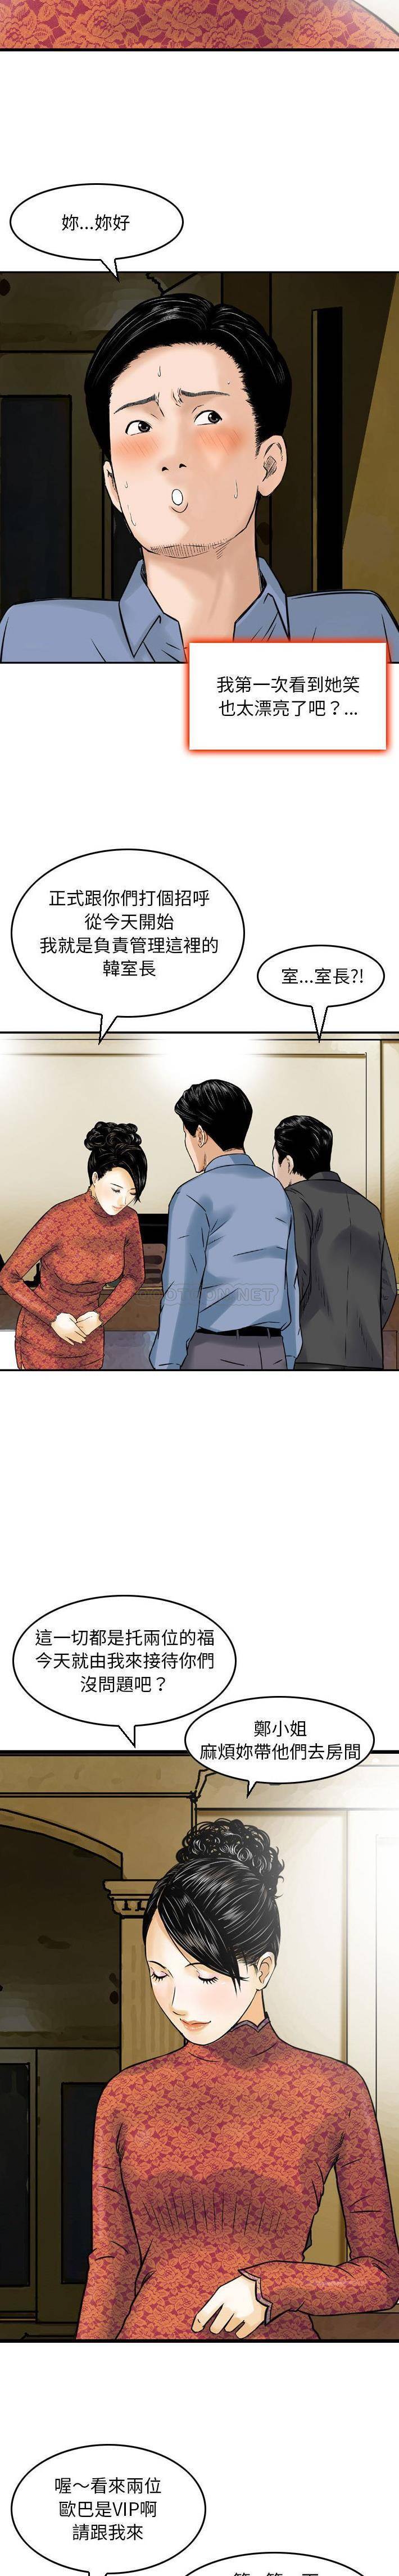 韩国污漫画 金錢的魅力 第11话 7